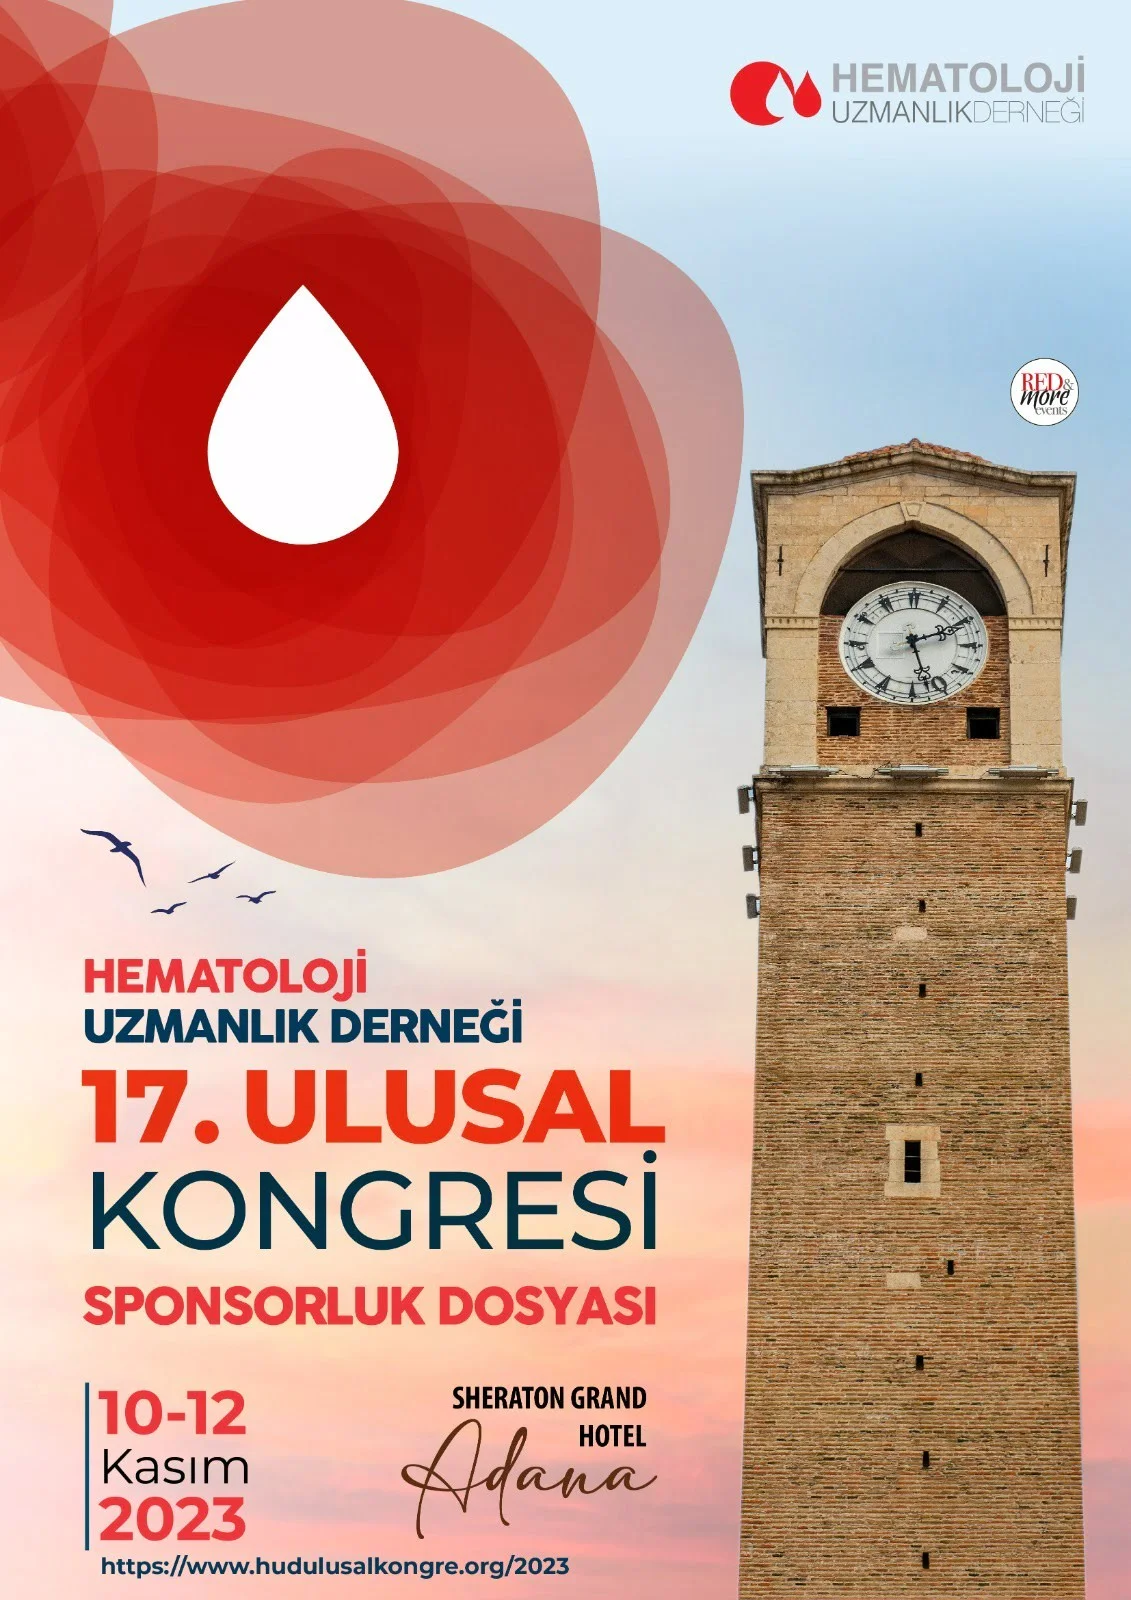 Hematoloji Uzmanlık Derneği 17. Ulusal Kongresi